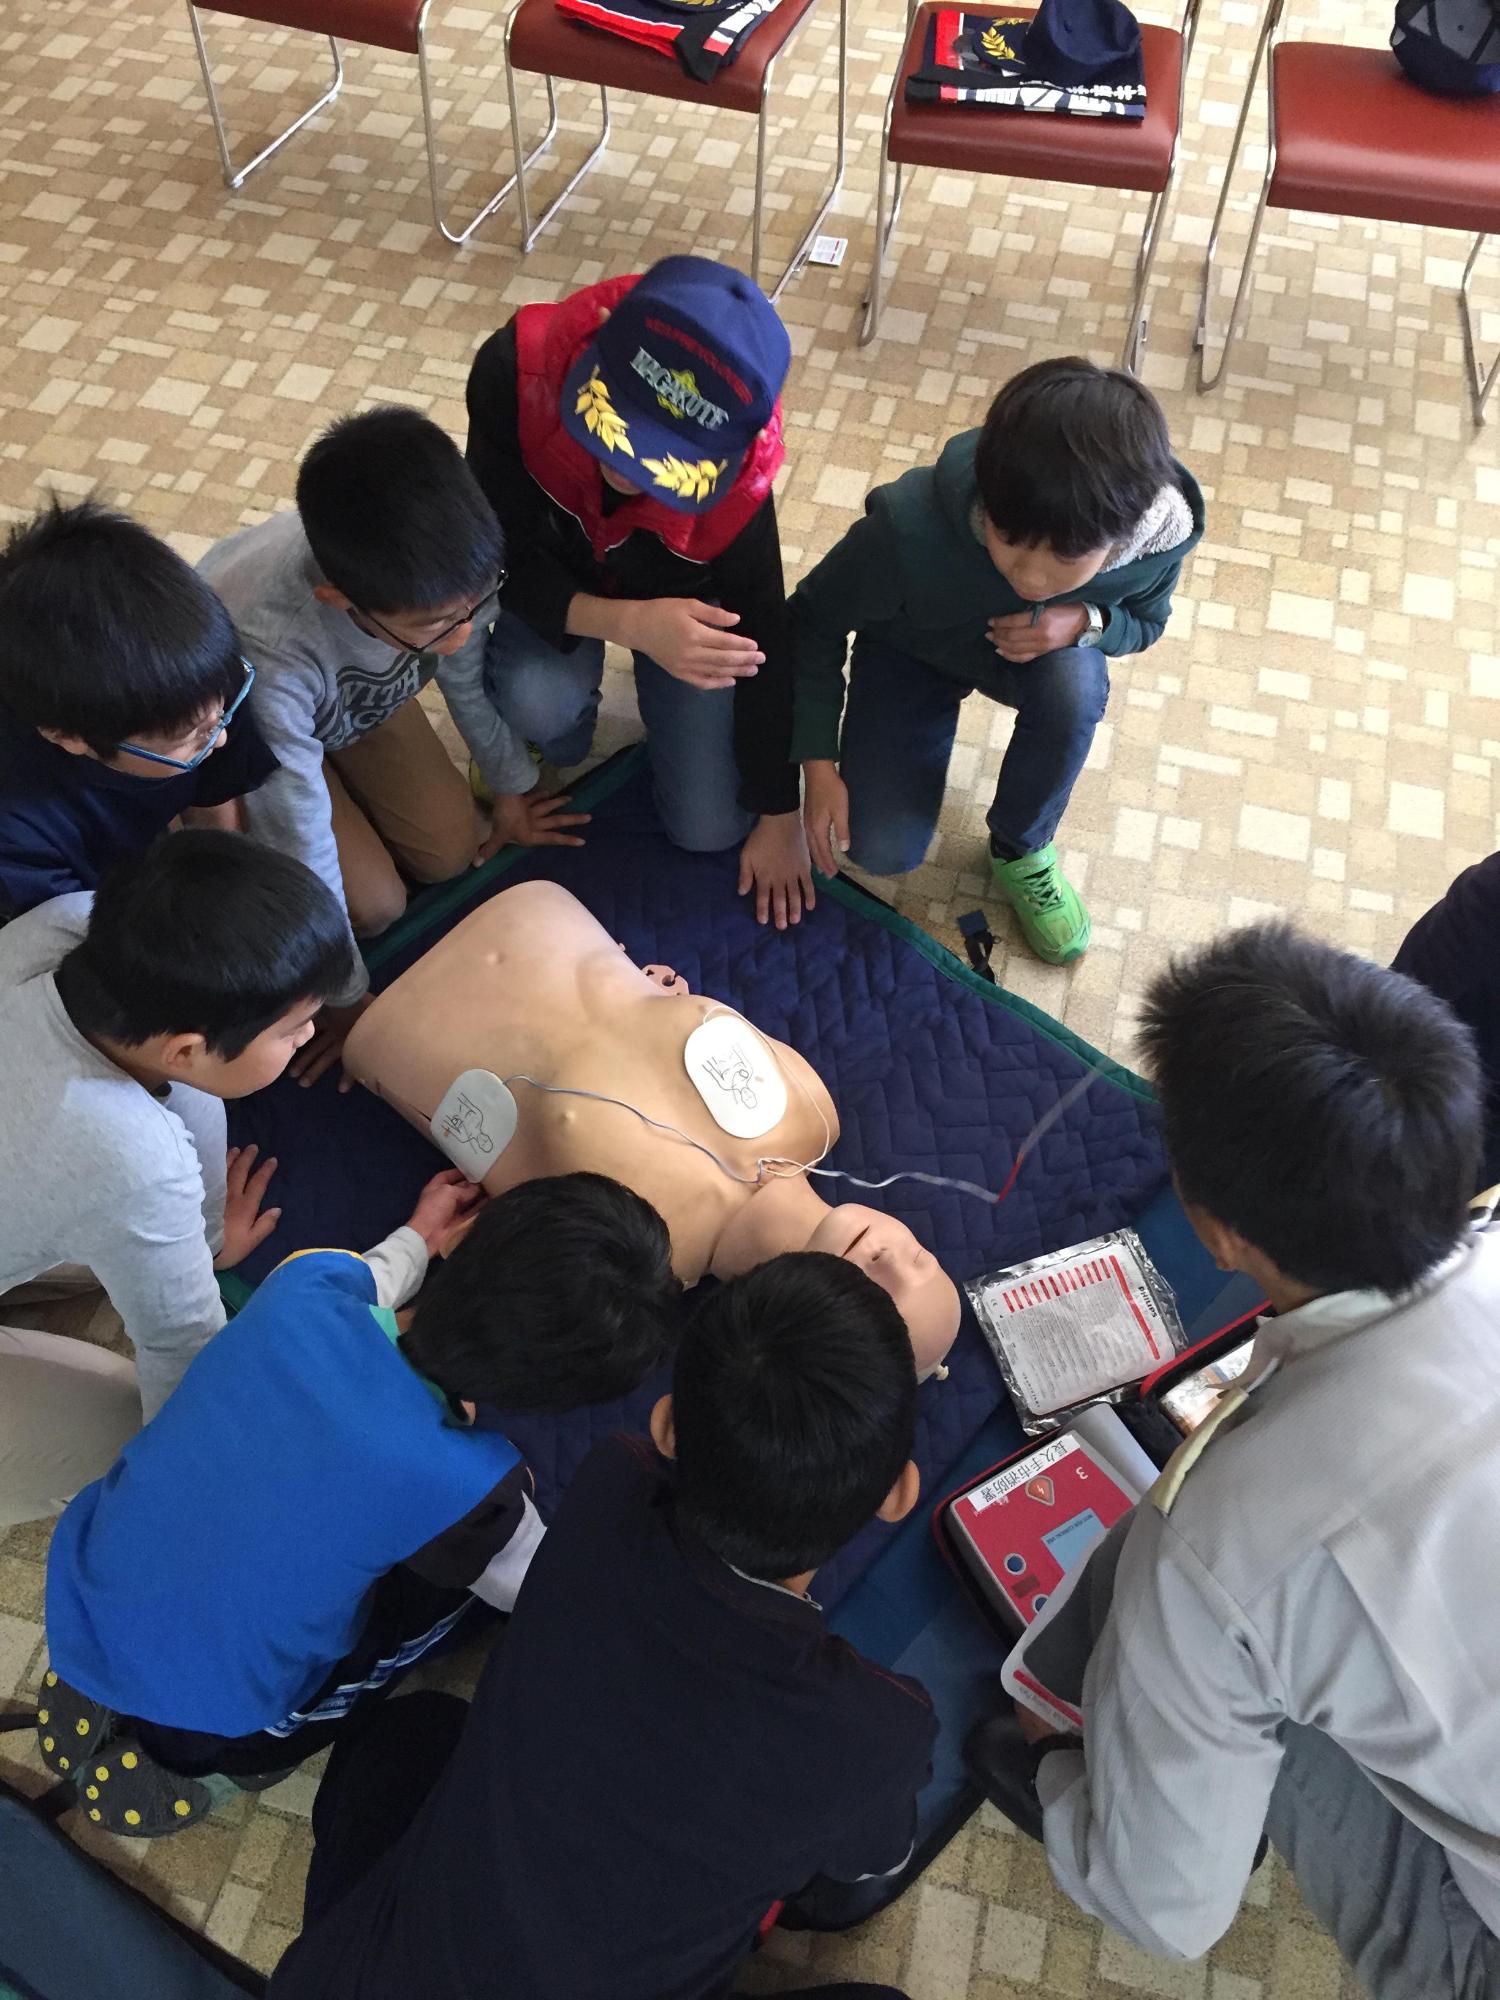 救命講習にてAEDが貼られた人形を見ながら救急隊員の説明を聞いているキッズ団員たちの写真